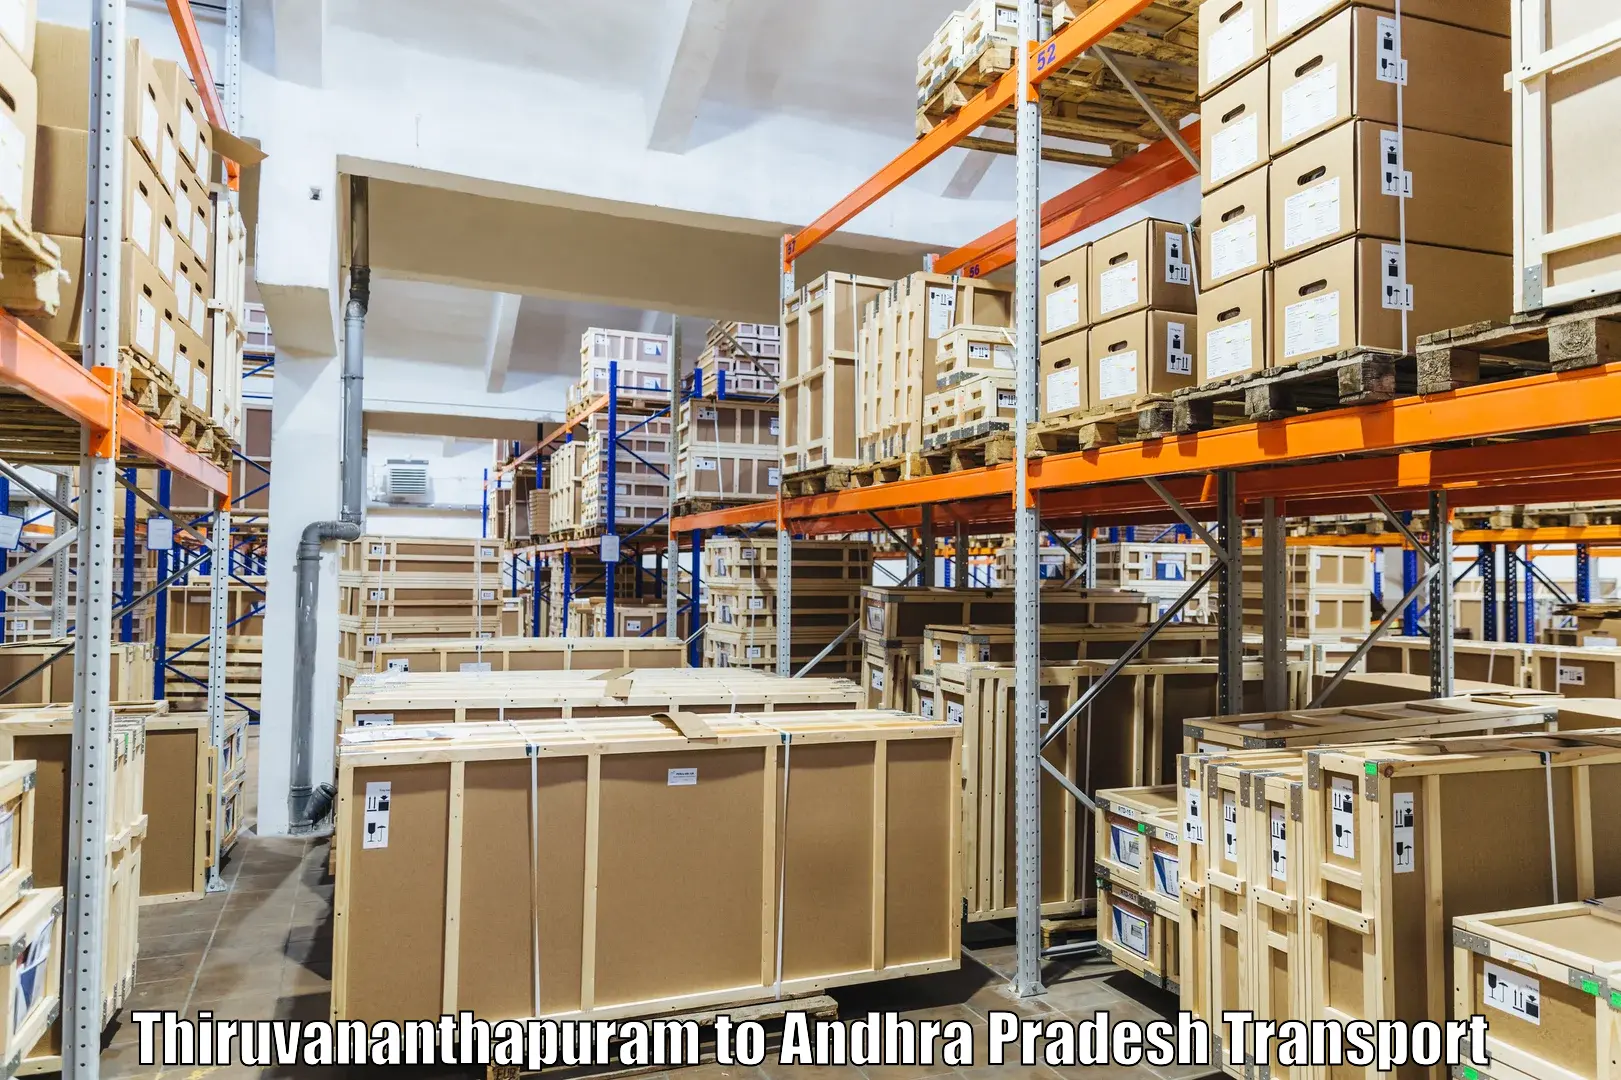 Transport in sharing Thiruvananthapuram to Elamanchili